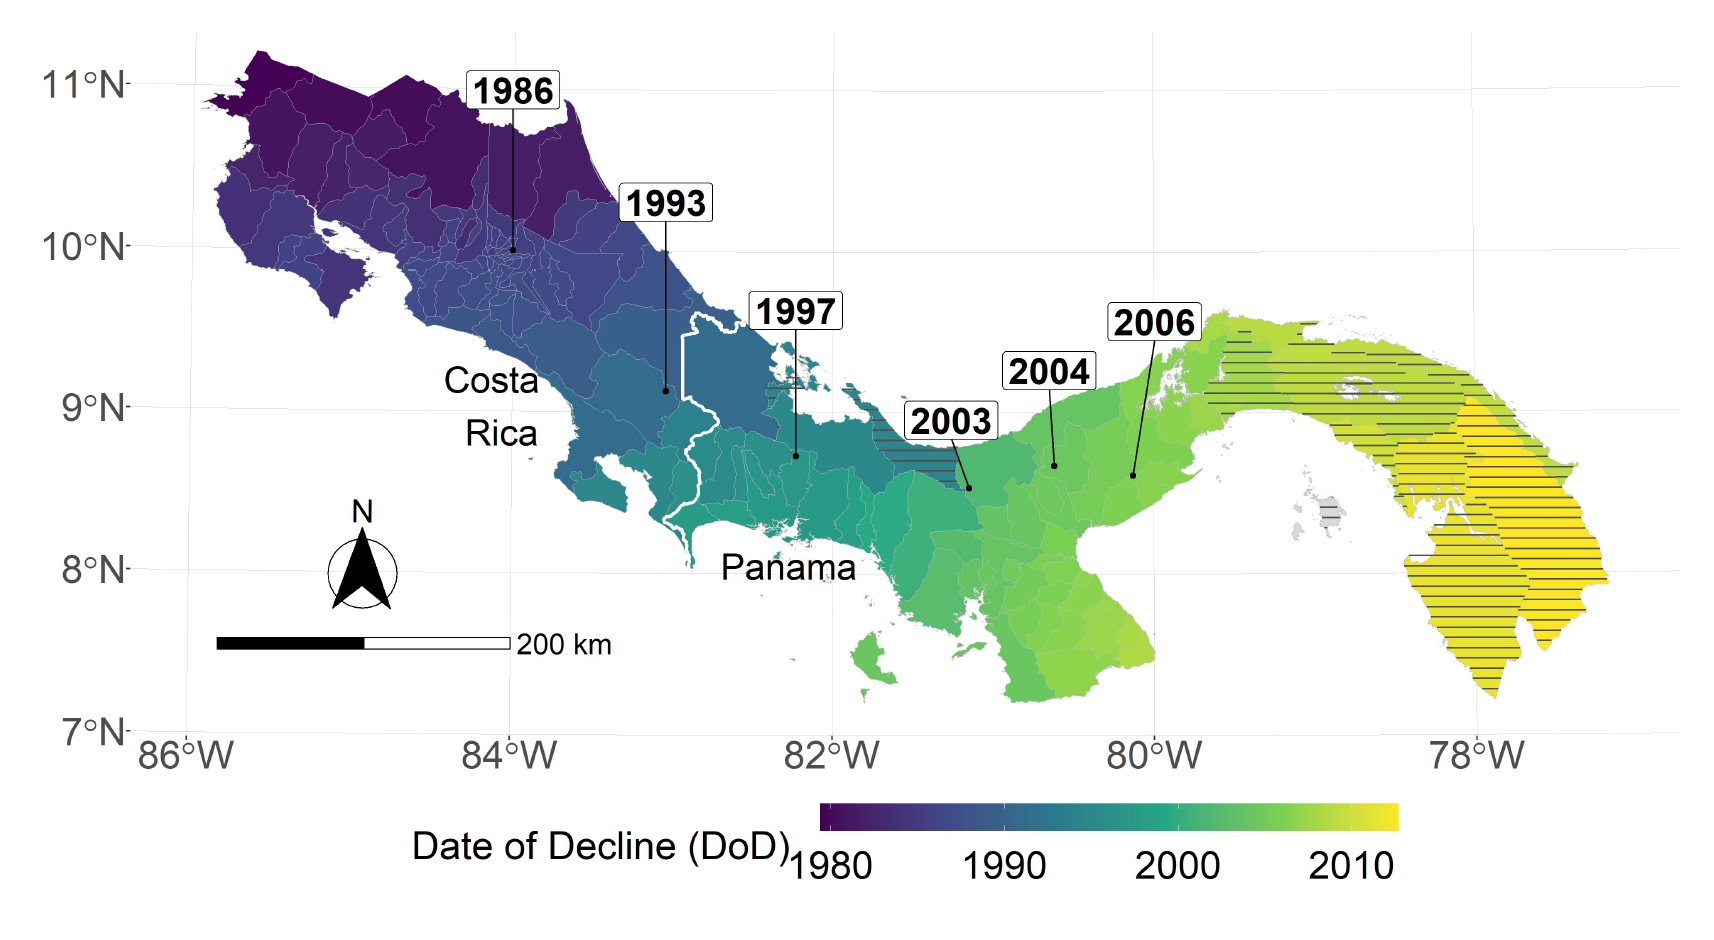 Mapa morado, verde y amarillo de Panamá y Costa Rica que representa casos de malaria y muertes de anfibios